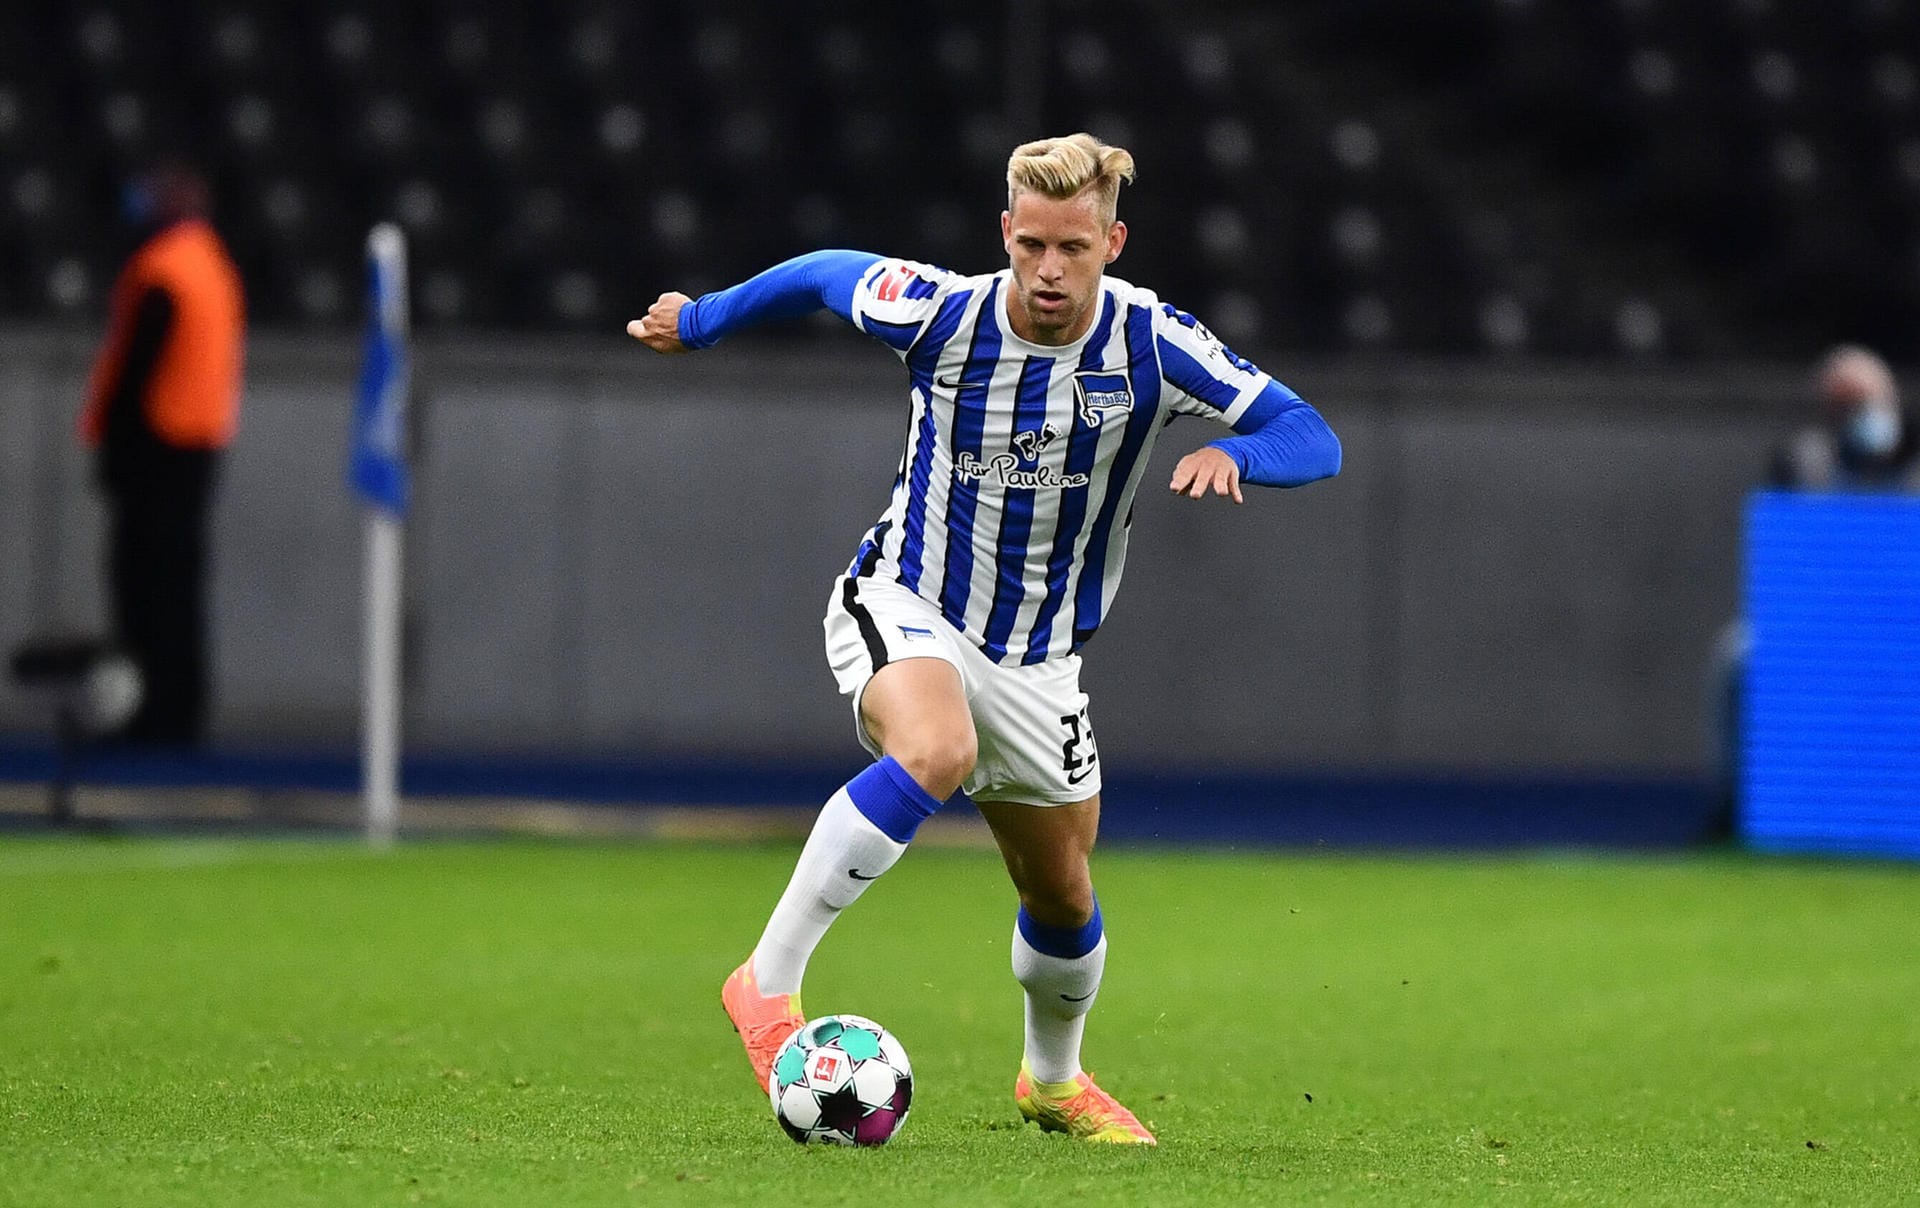 U-21-Nationalspieler Arne Maier wird an Bundesliga-Aufsteiger Arminia Bielefeld ausgeliehen. Der derzeit erneut am Knie verletzte 21-Jährige hatte zuletzt seinen Wechselwunsch geäußert, da er nur wenig Einsatzzeit bekommen hatte.